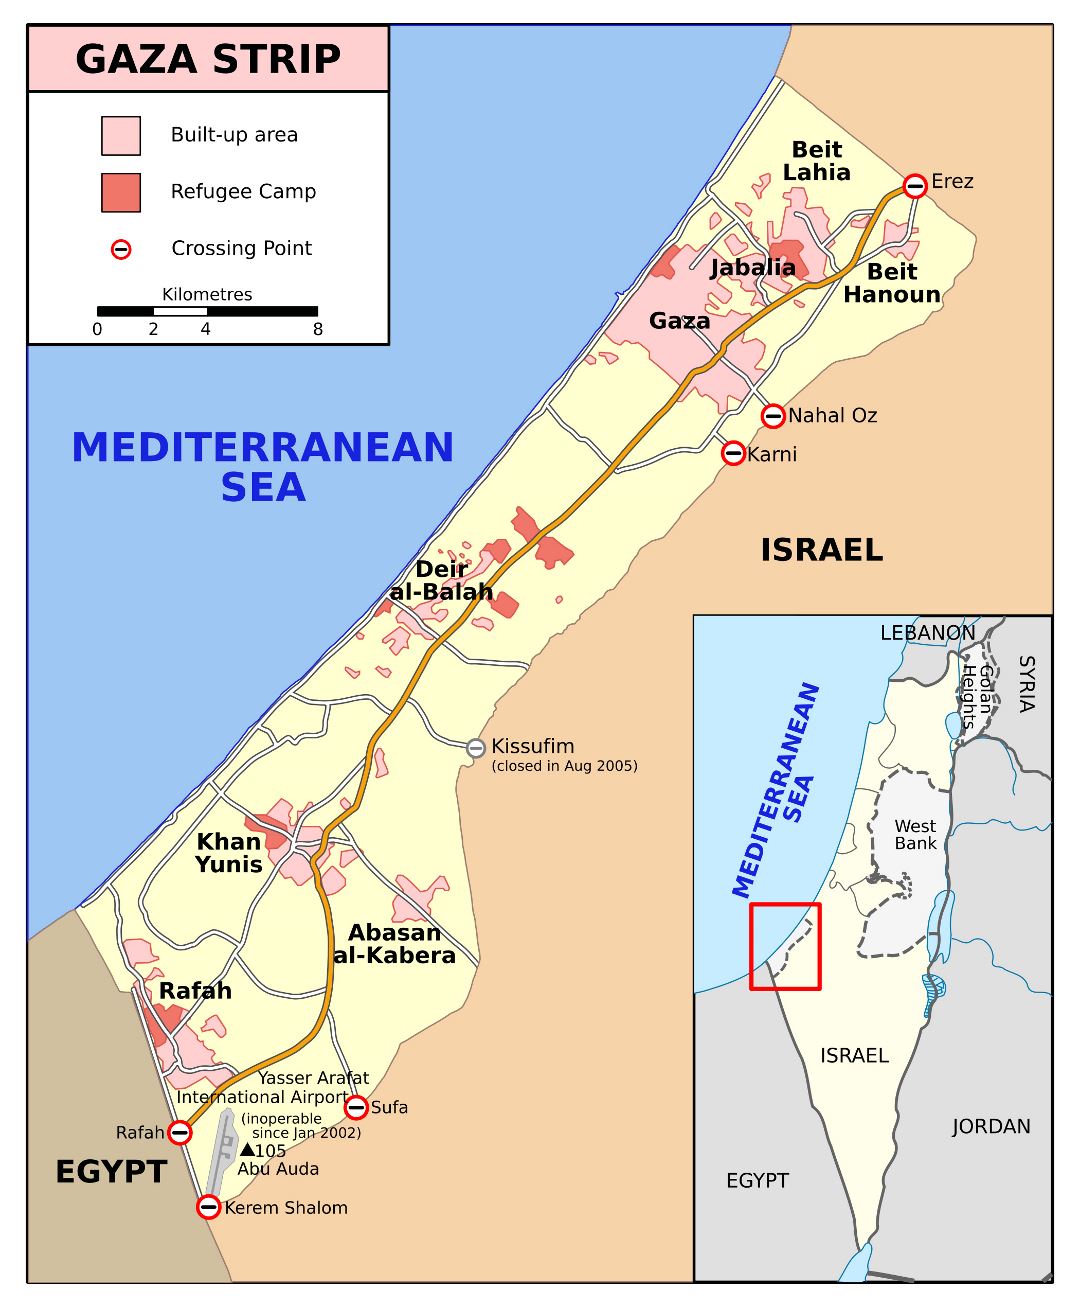 Grande detallado mapa de la Franja de Gaza con carreteras y ciudades